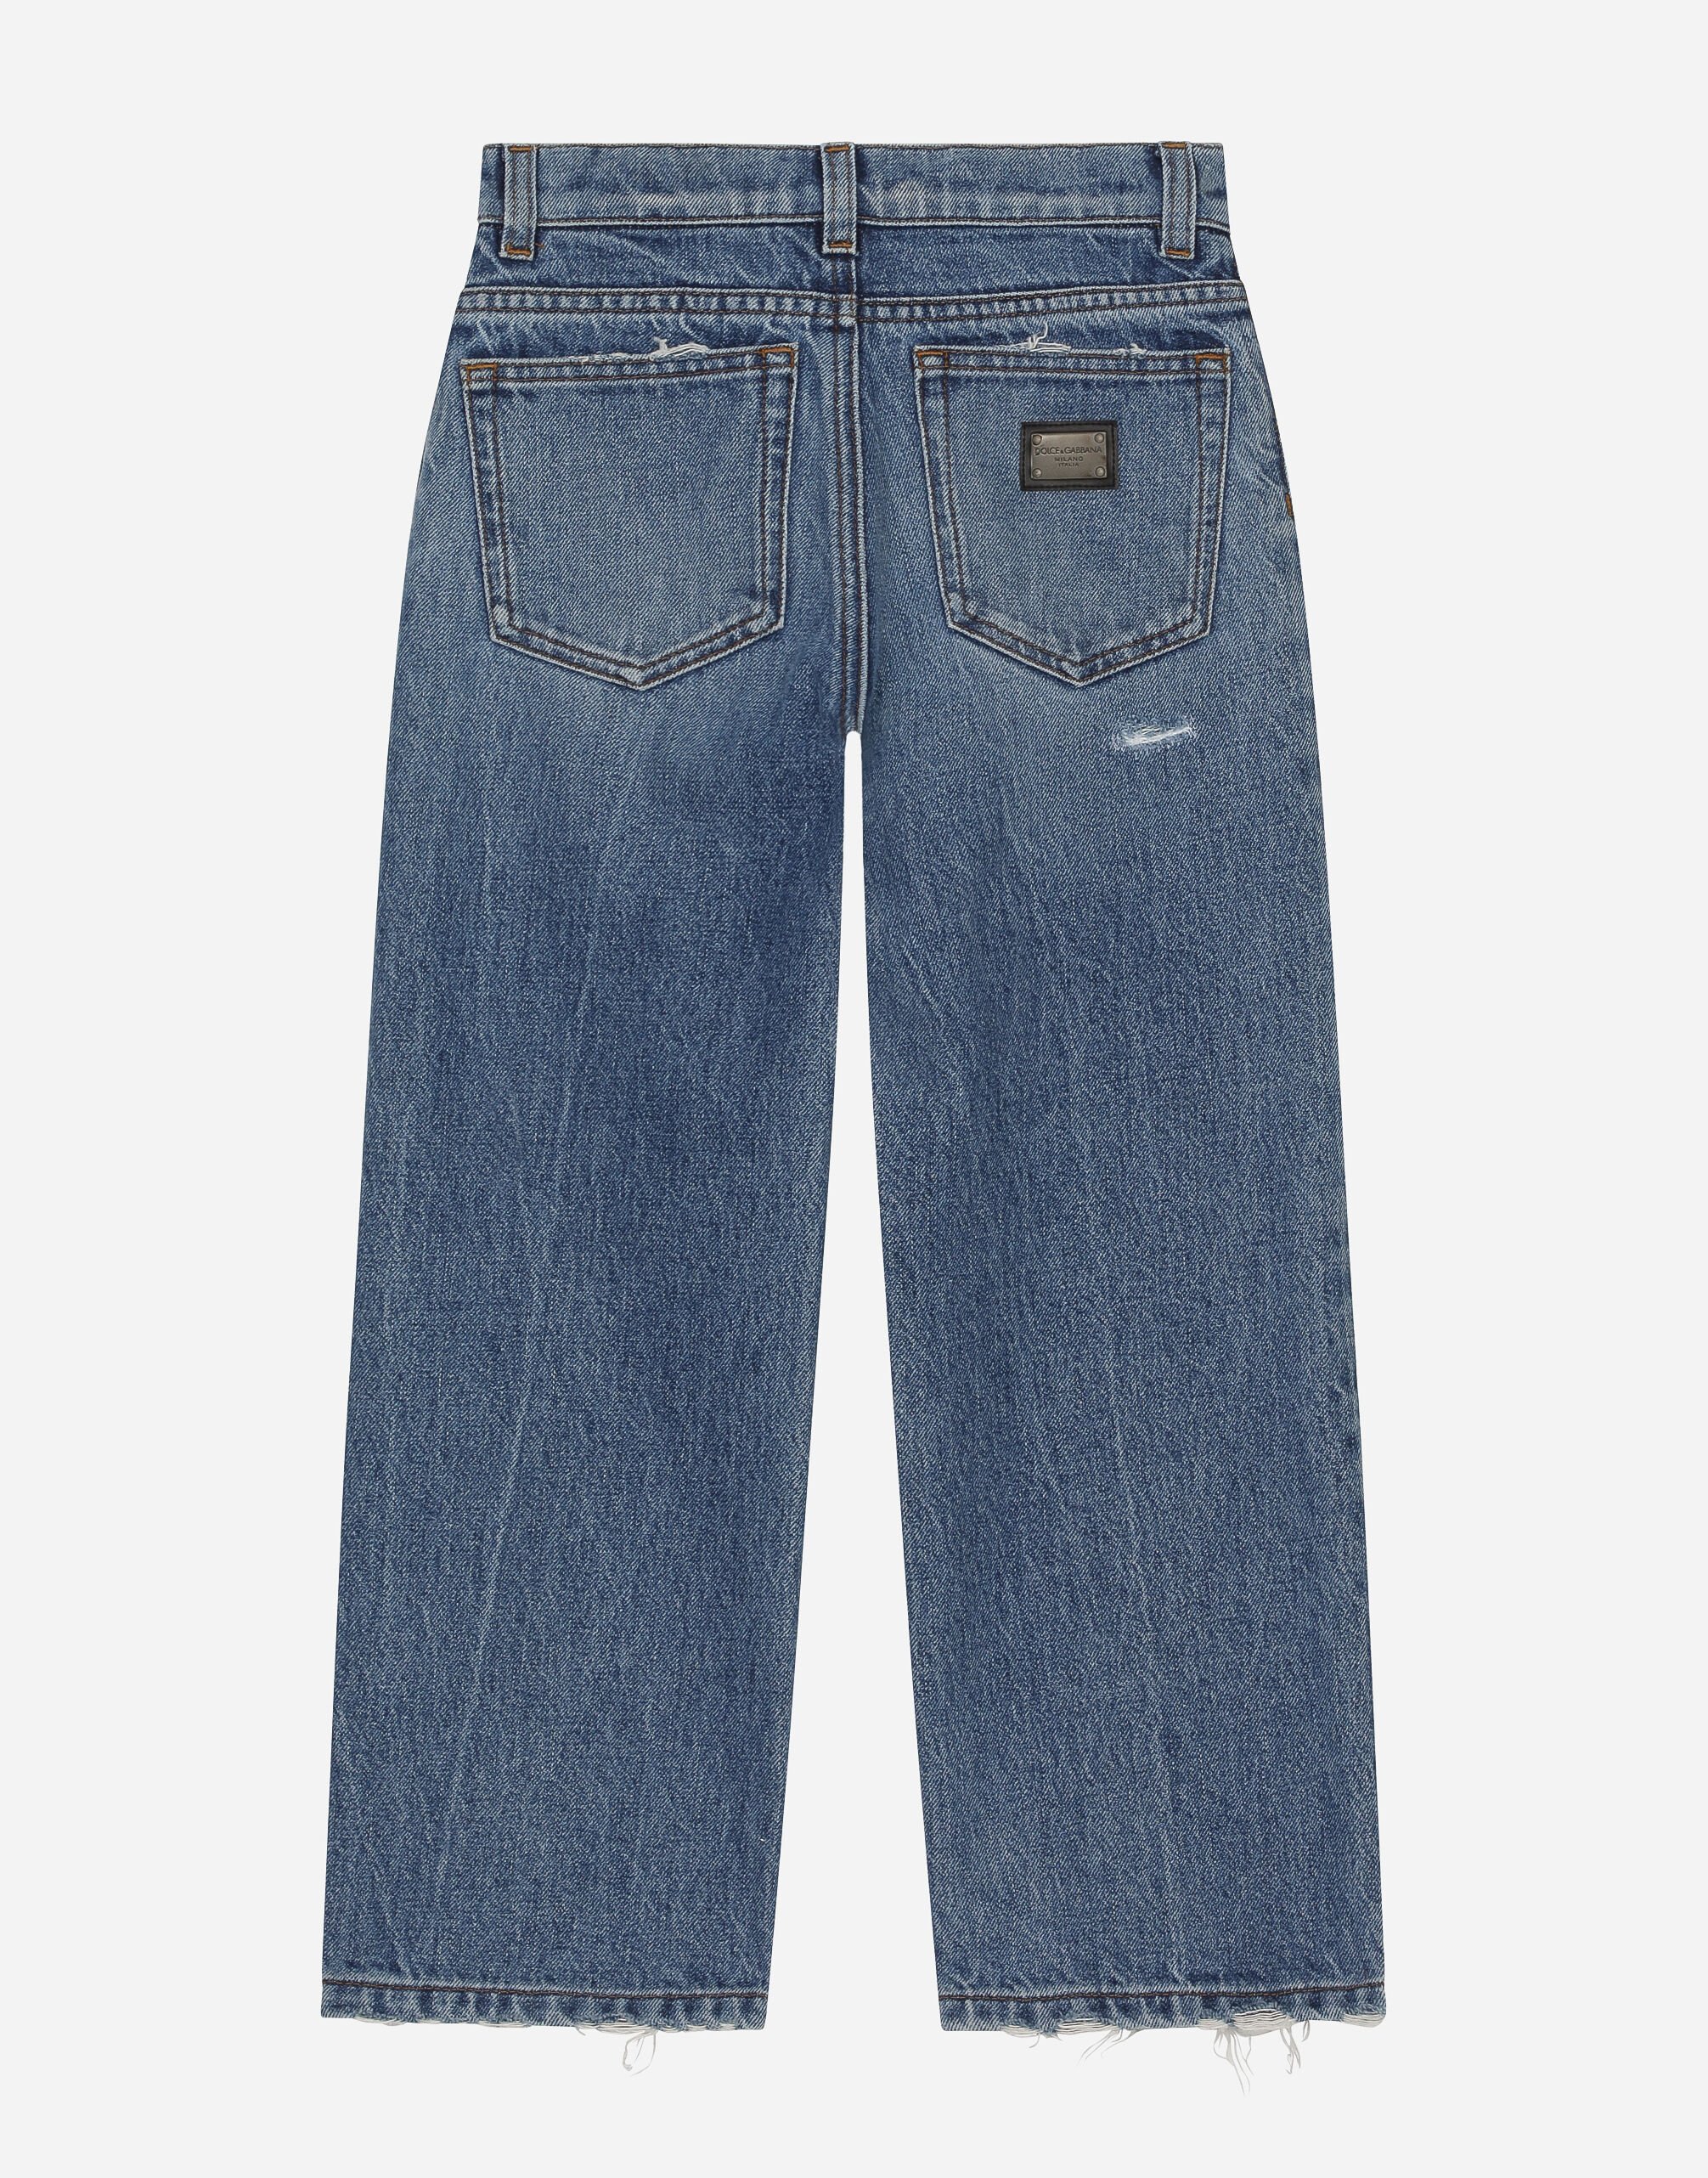 ブルーのボーイズ 5-pocket treated denim jeans with logo tag 